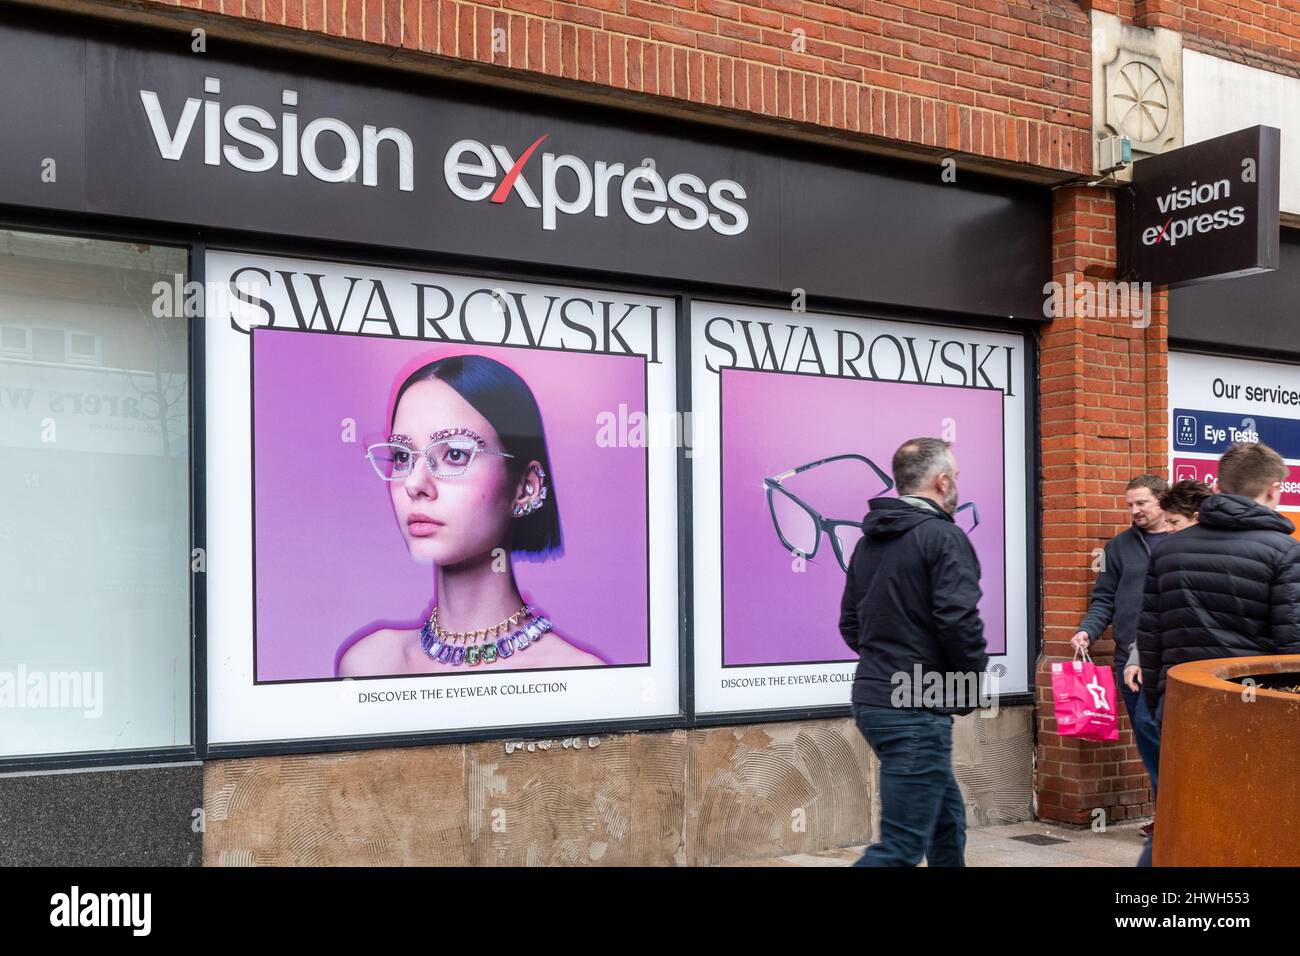 Les gens qui marchent devant Swarovski adverts dans une fenêtre de magasin d'opticien Vision Express, centre-ville de Camberley, Surrey, Angleterre, Royaume-Uni Banque D'Images